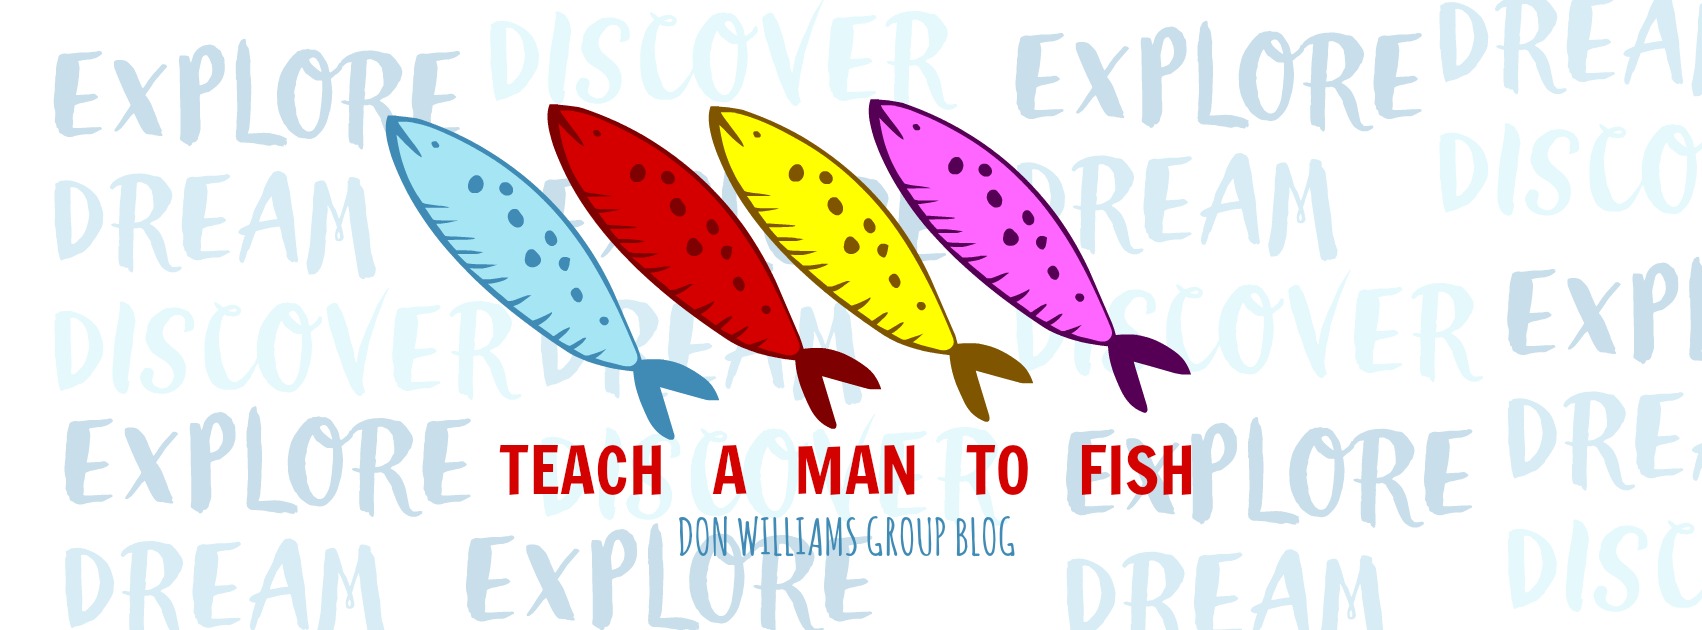 TEACH A MAN TO FISH.jpg